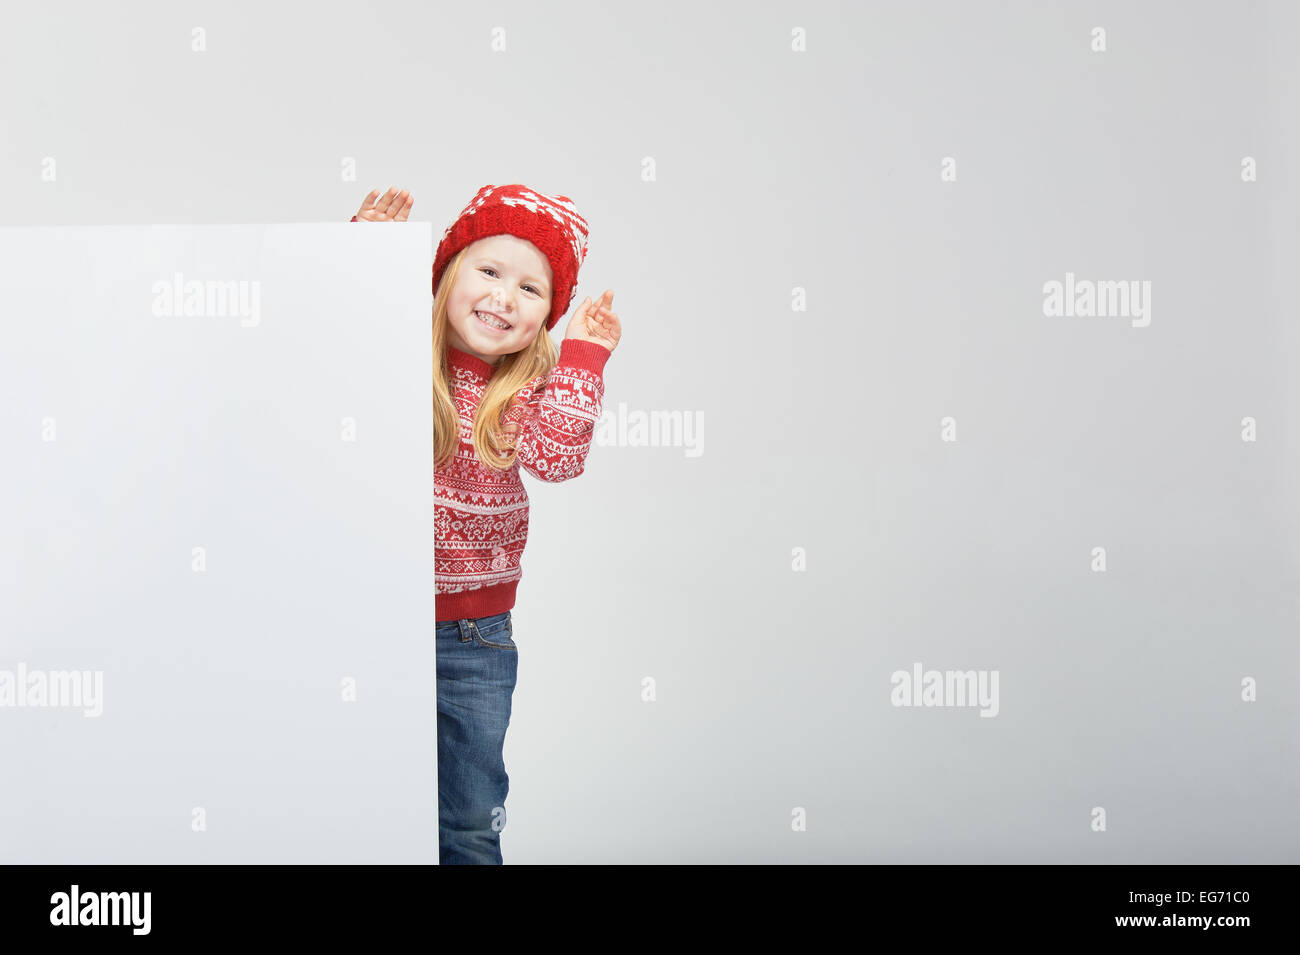 Smiling belle fille blonde dans un chapeau d'hiver rouge et blanc avec l'emplacement pour un texte ou une publicité Banque D'Images